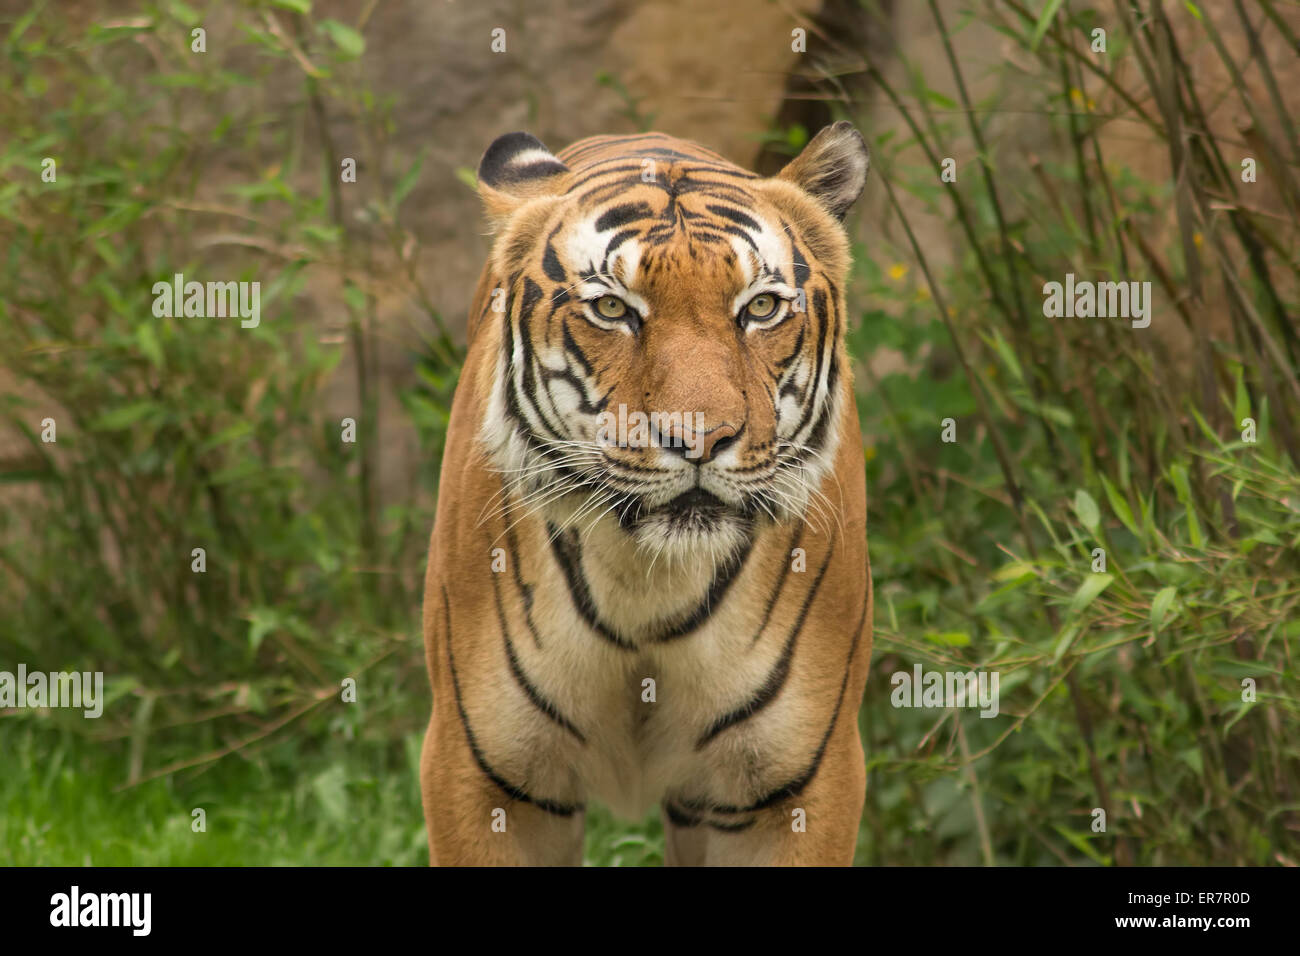 Porträt eines schönen Tigers.  Konzept der Tierwelt. Stockfoto